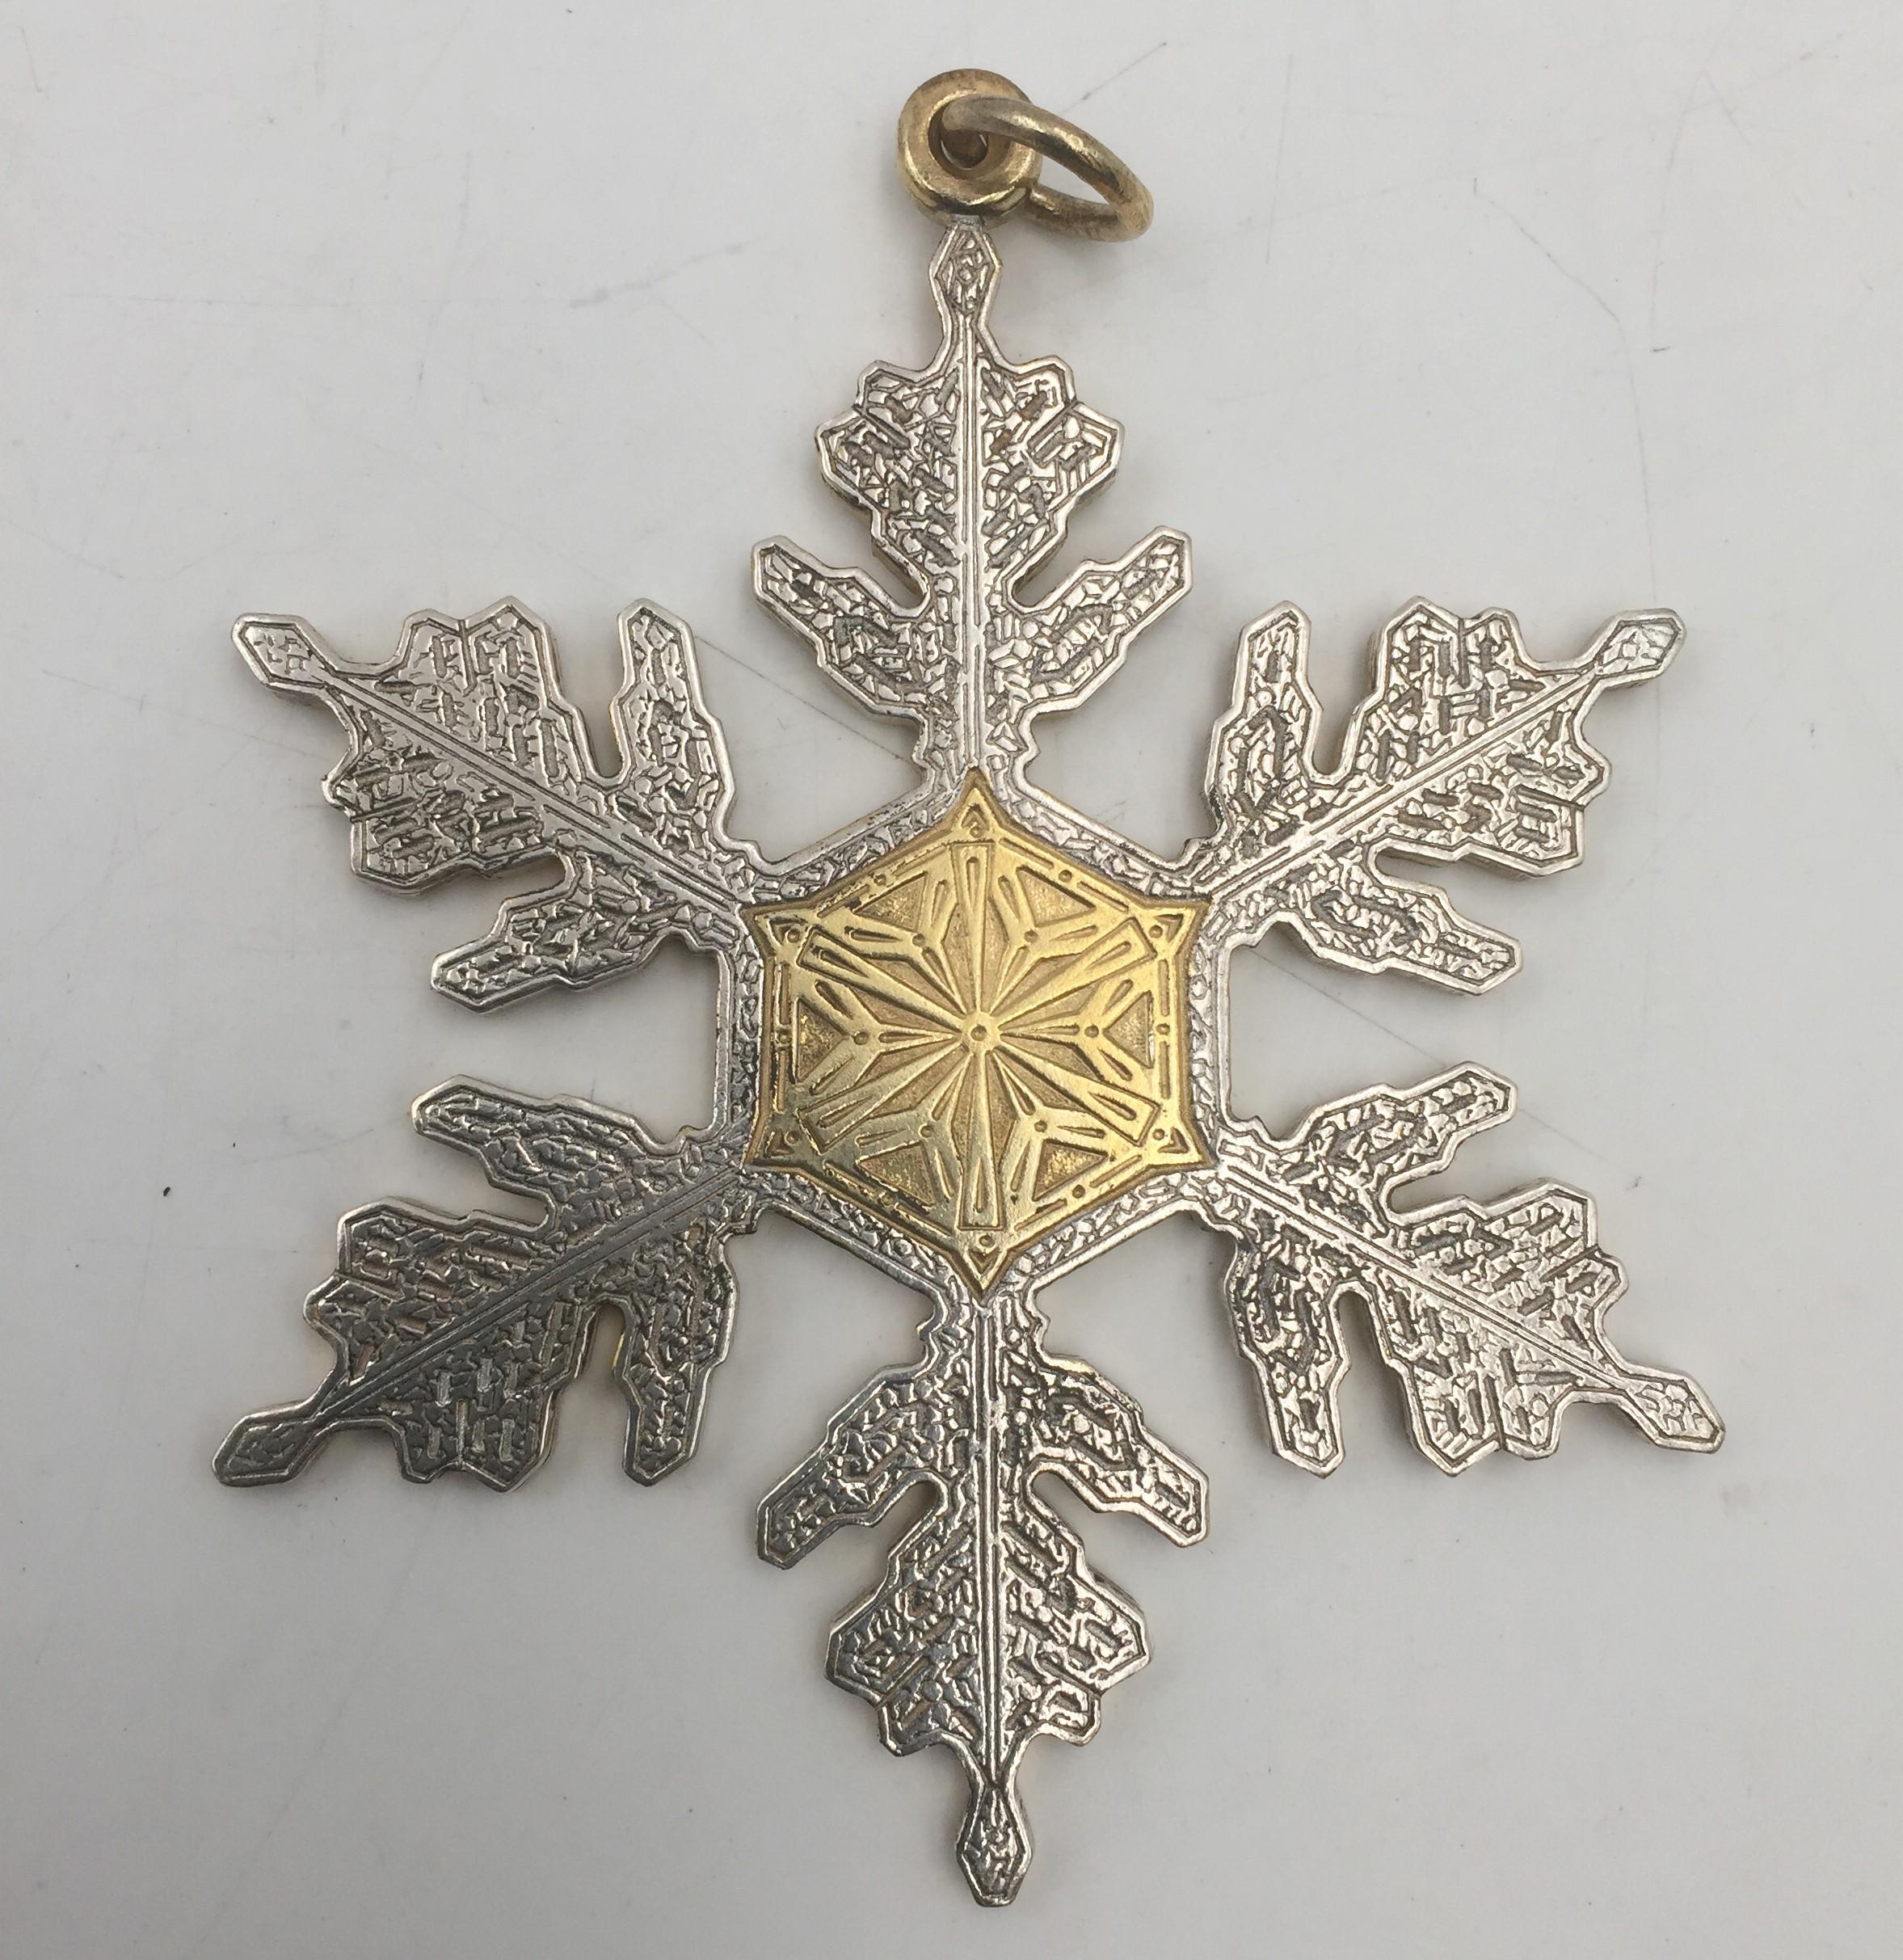 Exceptionnel assortiment de 6 décorations de Noël en argent sterling de Buccellati, toutes fabriquées en Italie, comprenant :

- un flocon de neige gravé, doré au centre et sur le dessus, mesurant 3 1/2'' de hauteur par 3'' de largeur

- une